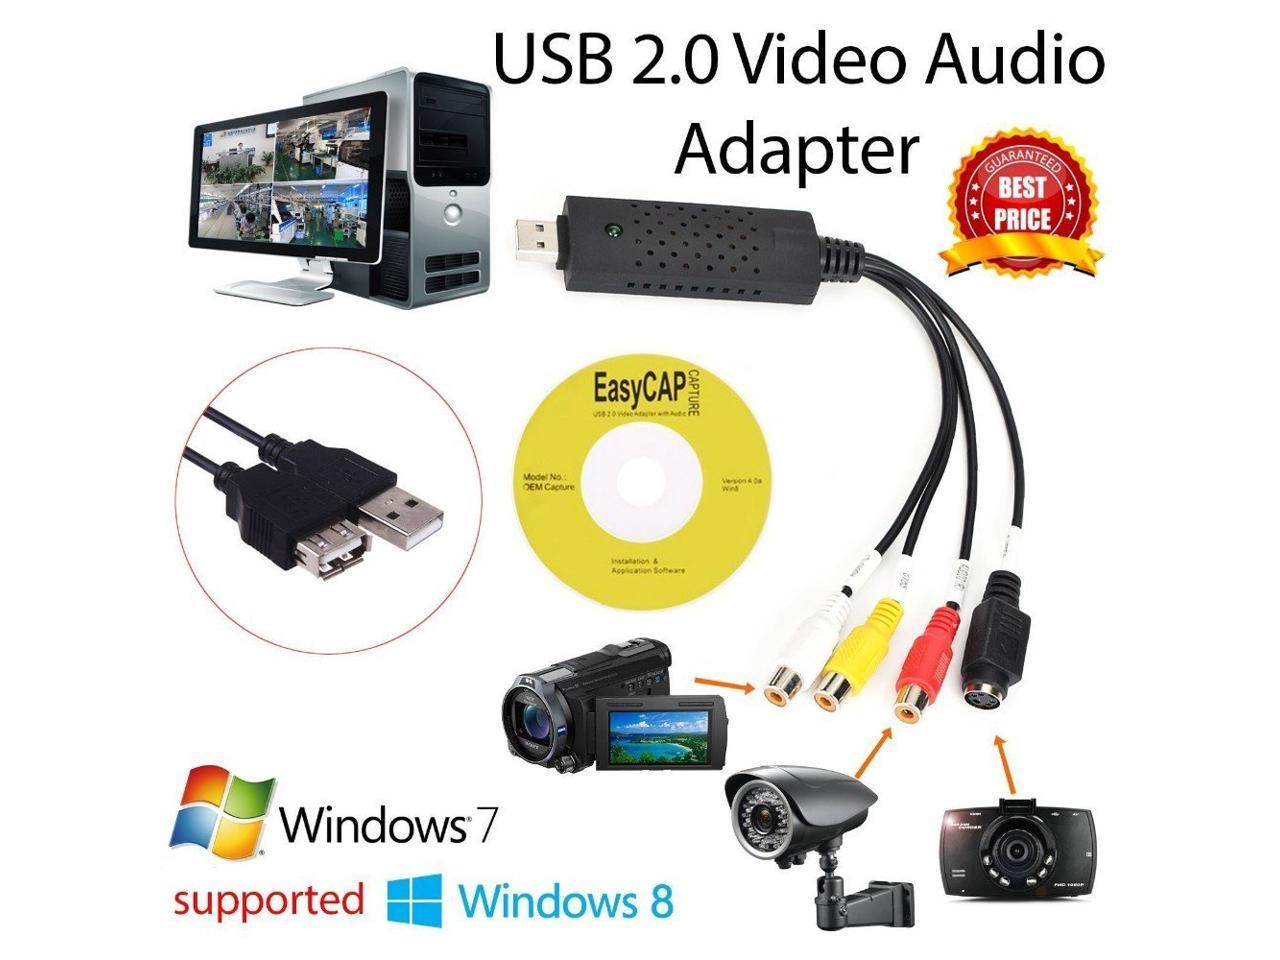 Easycap usb программа захвата. USB 2.0 видеозахвата EASYCAP оцифровка видеокассет.. USB 2.0 видеозахвата EASYCAP оцифровка видеокассет. Драйвер. USB-карта видеозахвата dc60 характеристики. Карта захвата USB EASYCAP для видеозахвата.